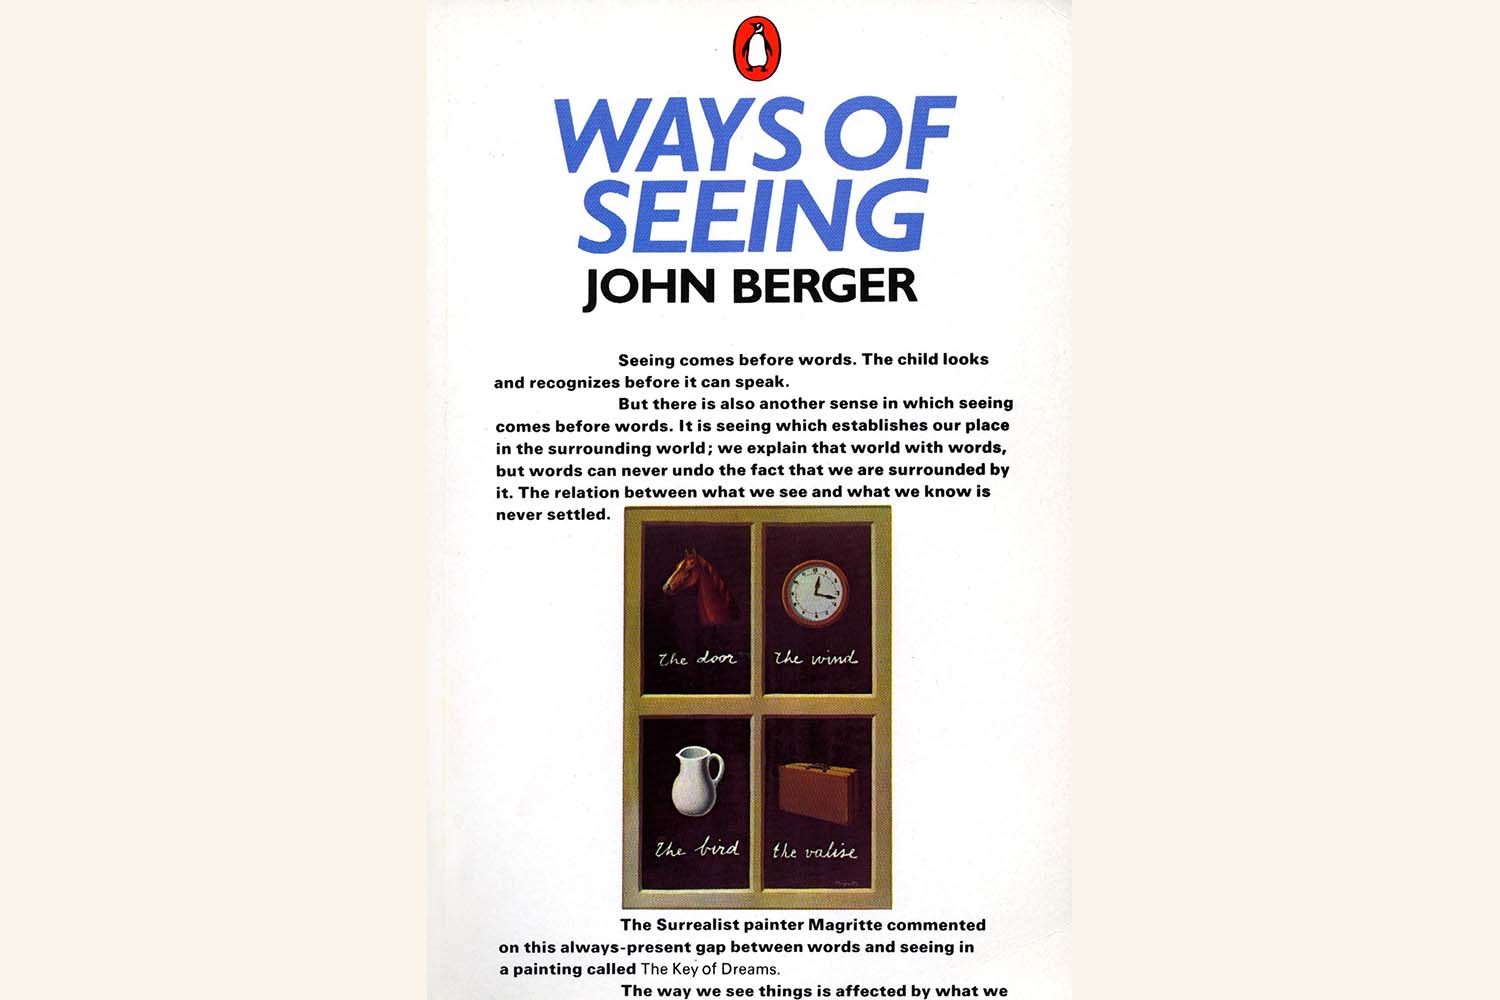 约翰·伯格著《看的方式》